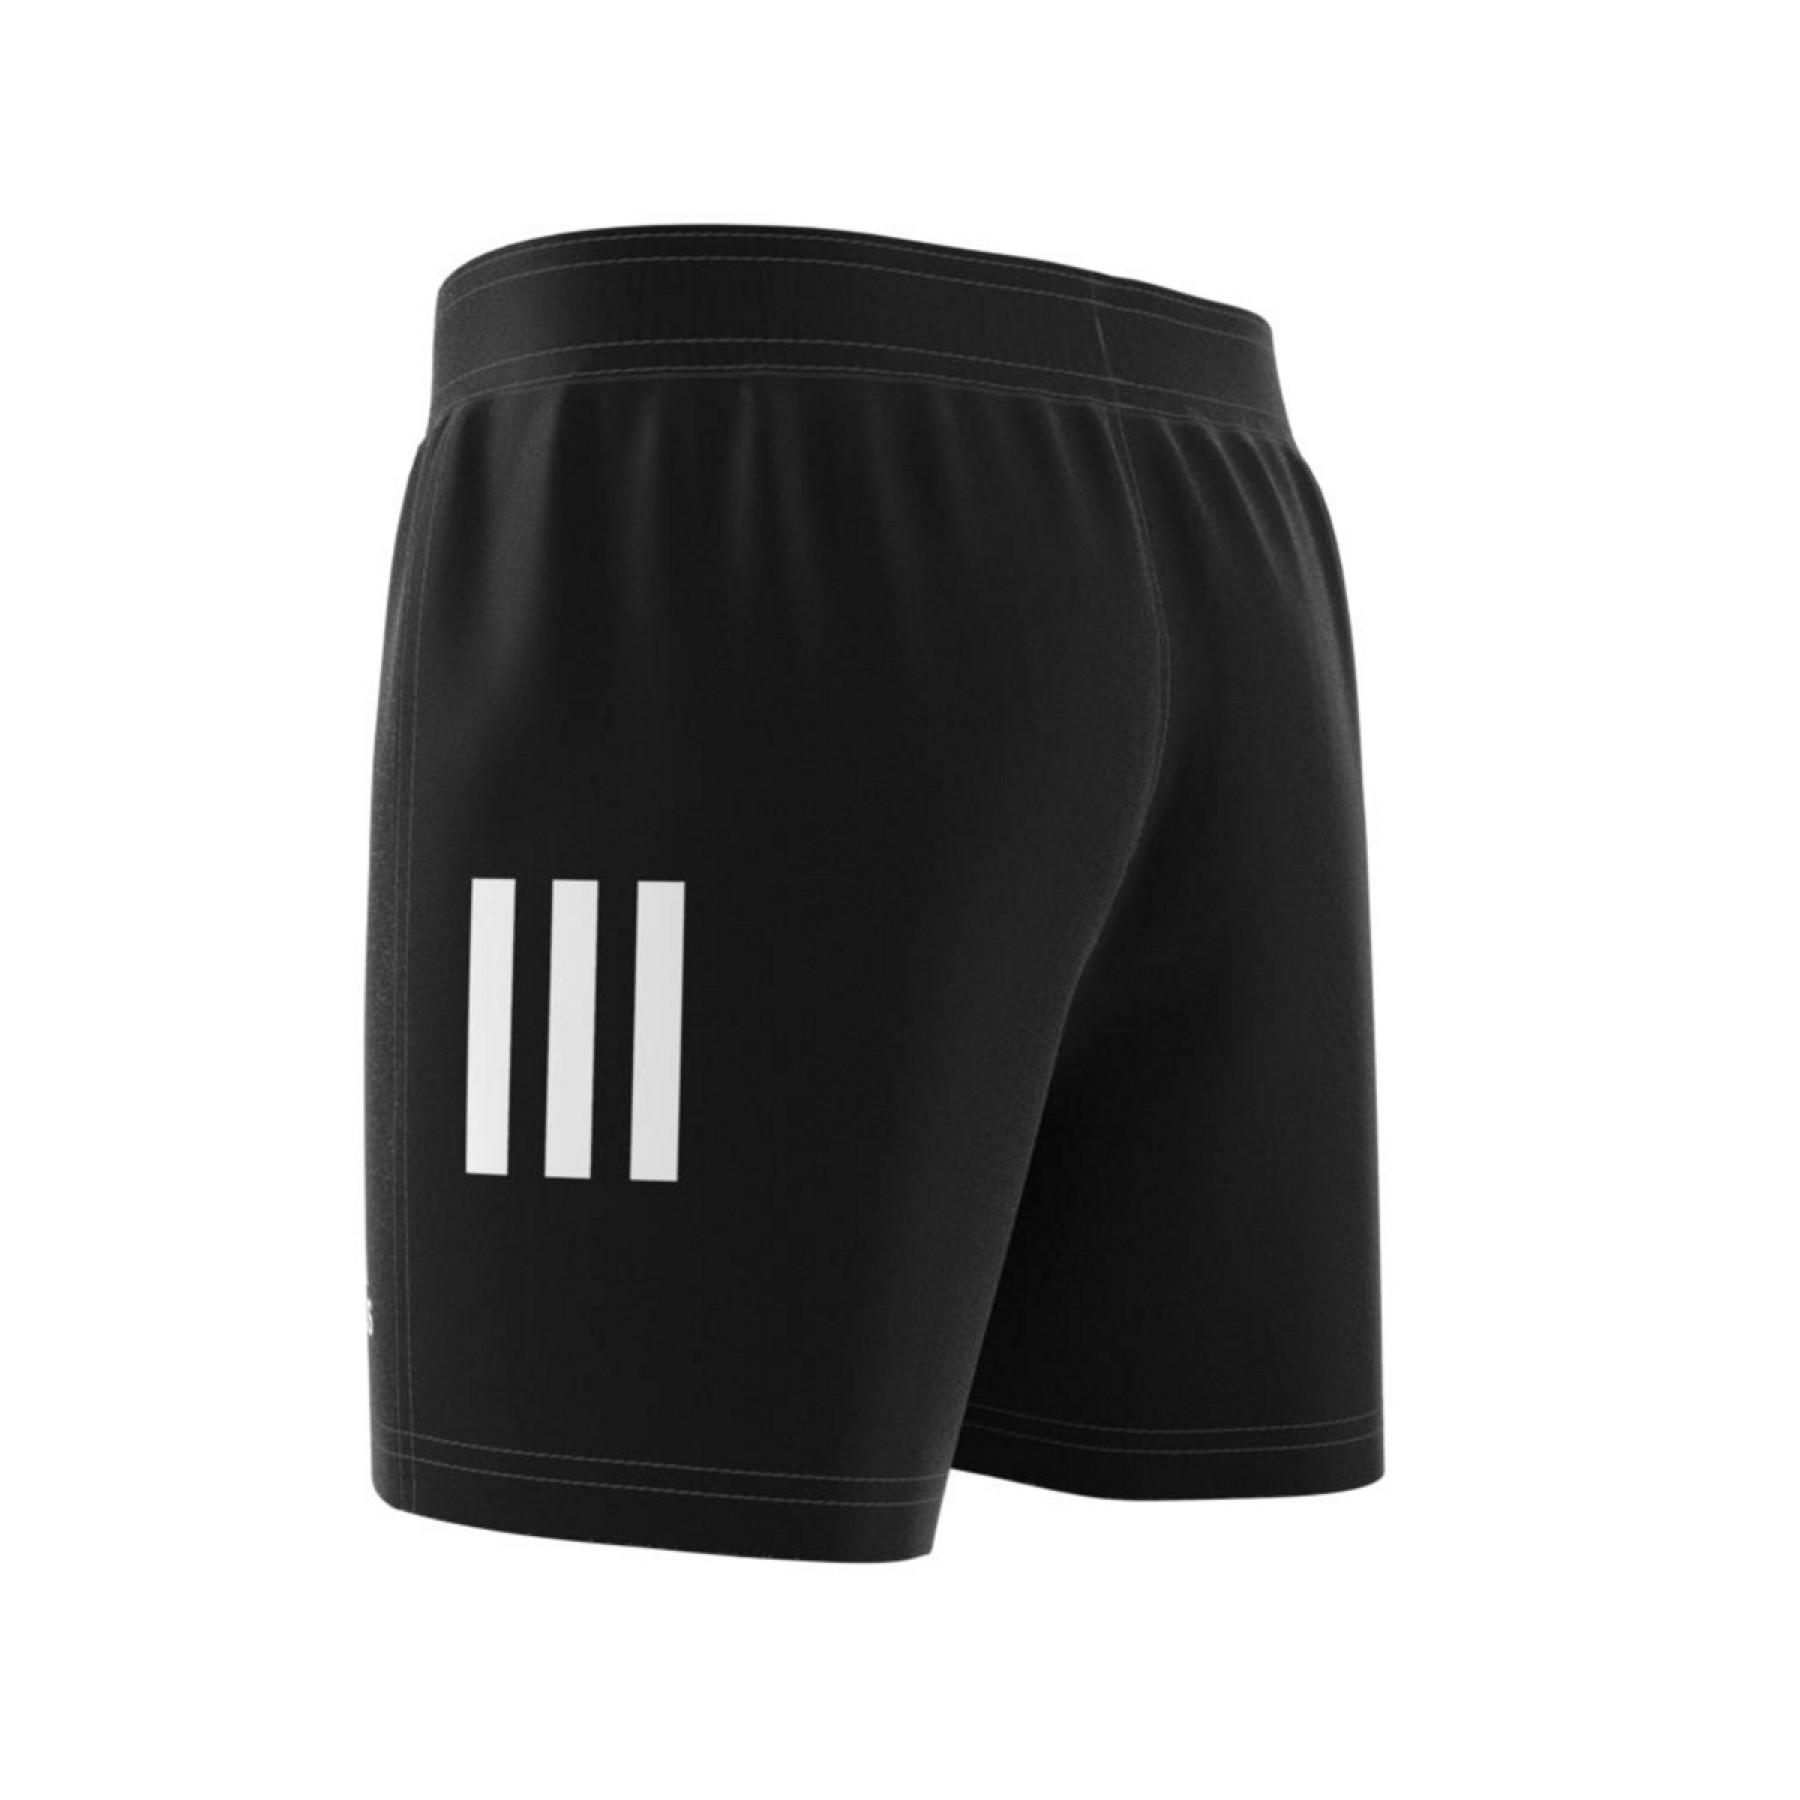 Pantalones cortos para niños adidas Rugby 3-Bandes